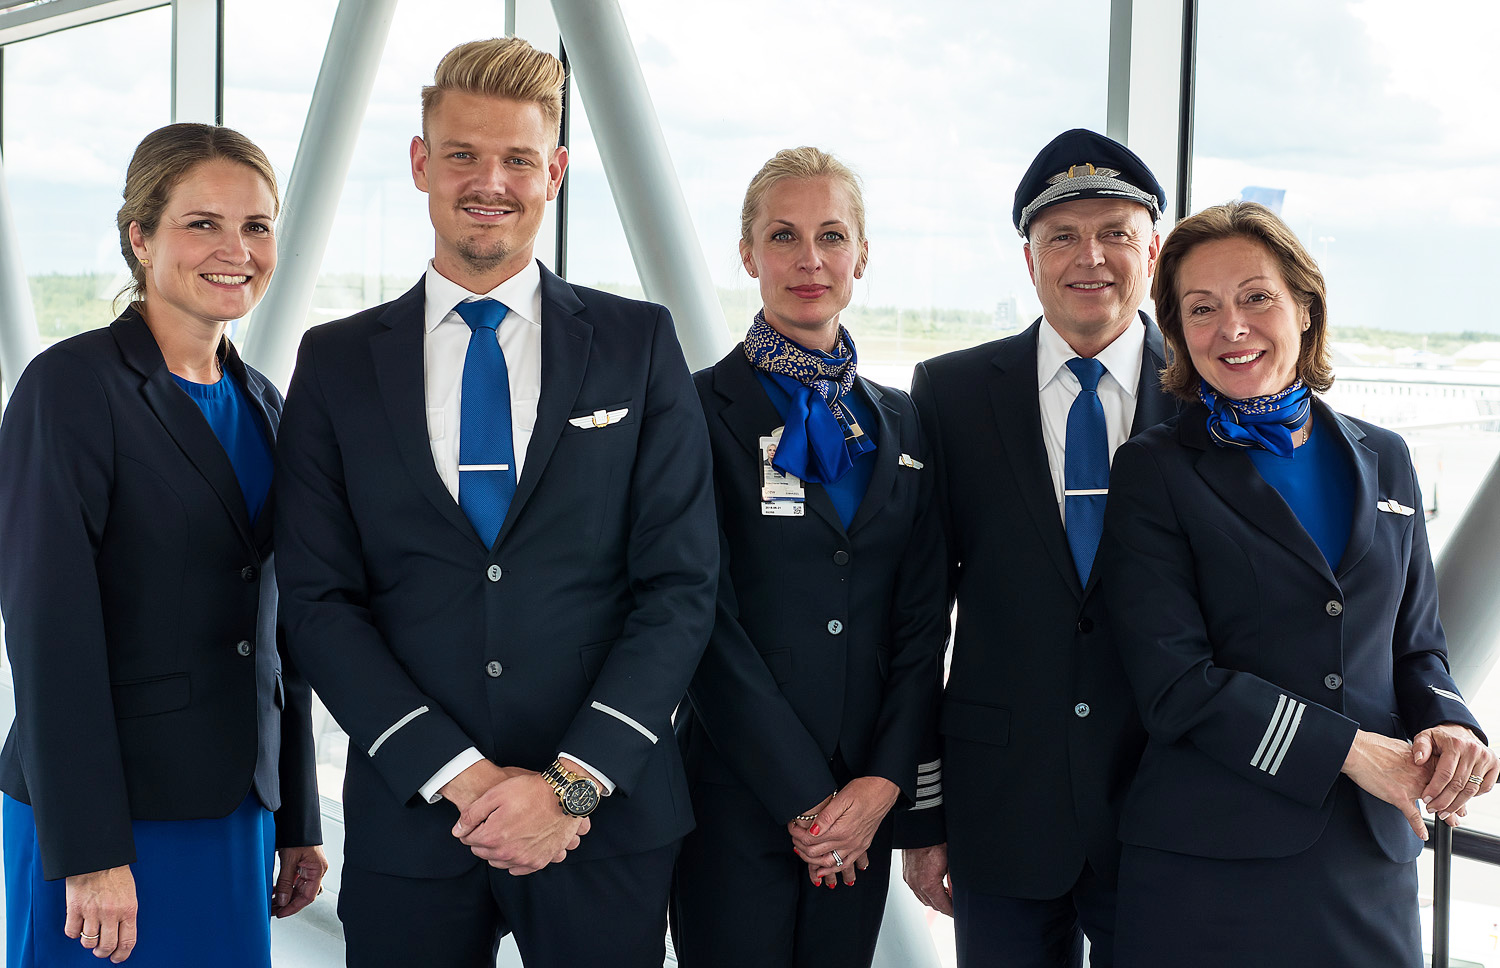 SAS is hiring Cabin Crew for Stockholm – Arlanda Airport